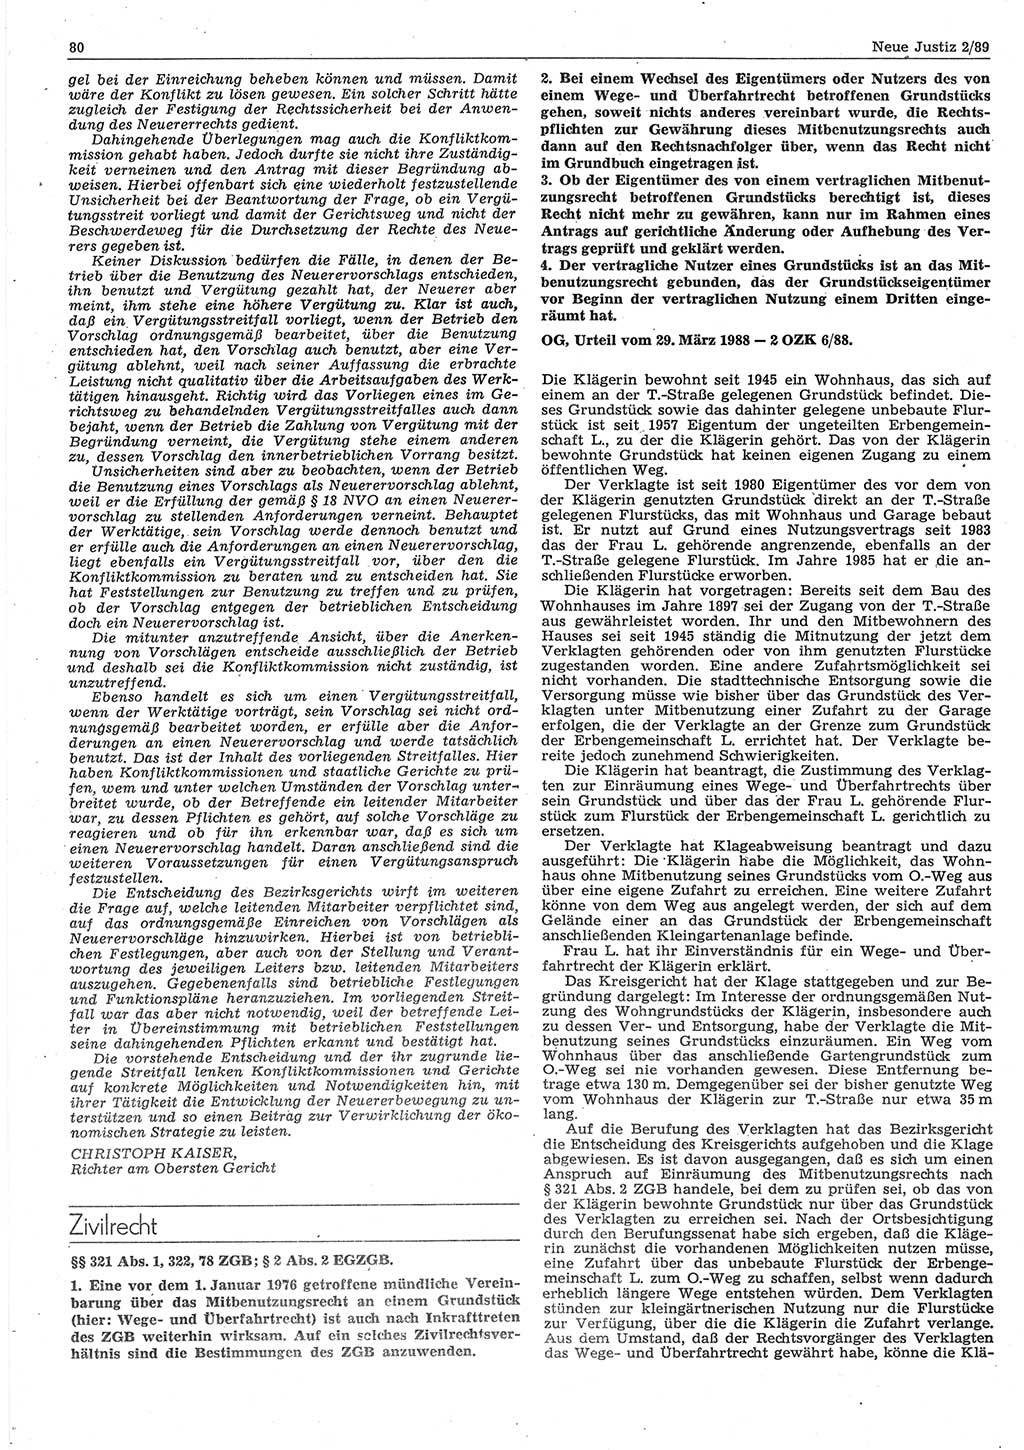 Neue Justiz (NJ), Zeitschrift für sozialistisches Recht und Gesetzlichkeit [Deutsche Demokratische Republik (DDR)], 43. Jahrgang 1989, Seite 80 (NJ DDR 1989, S. 80)